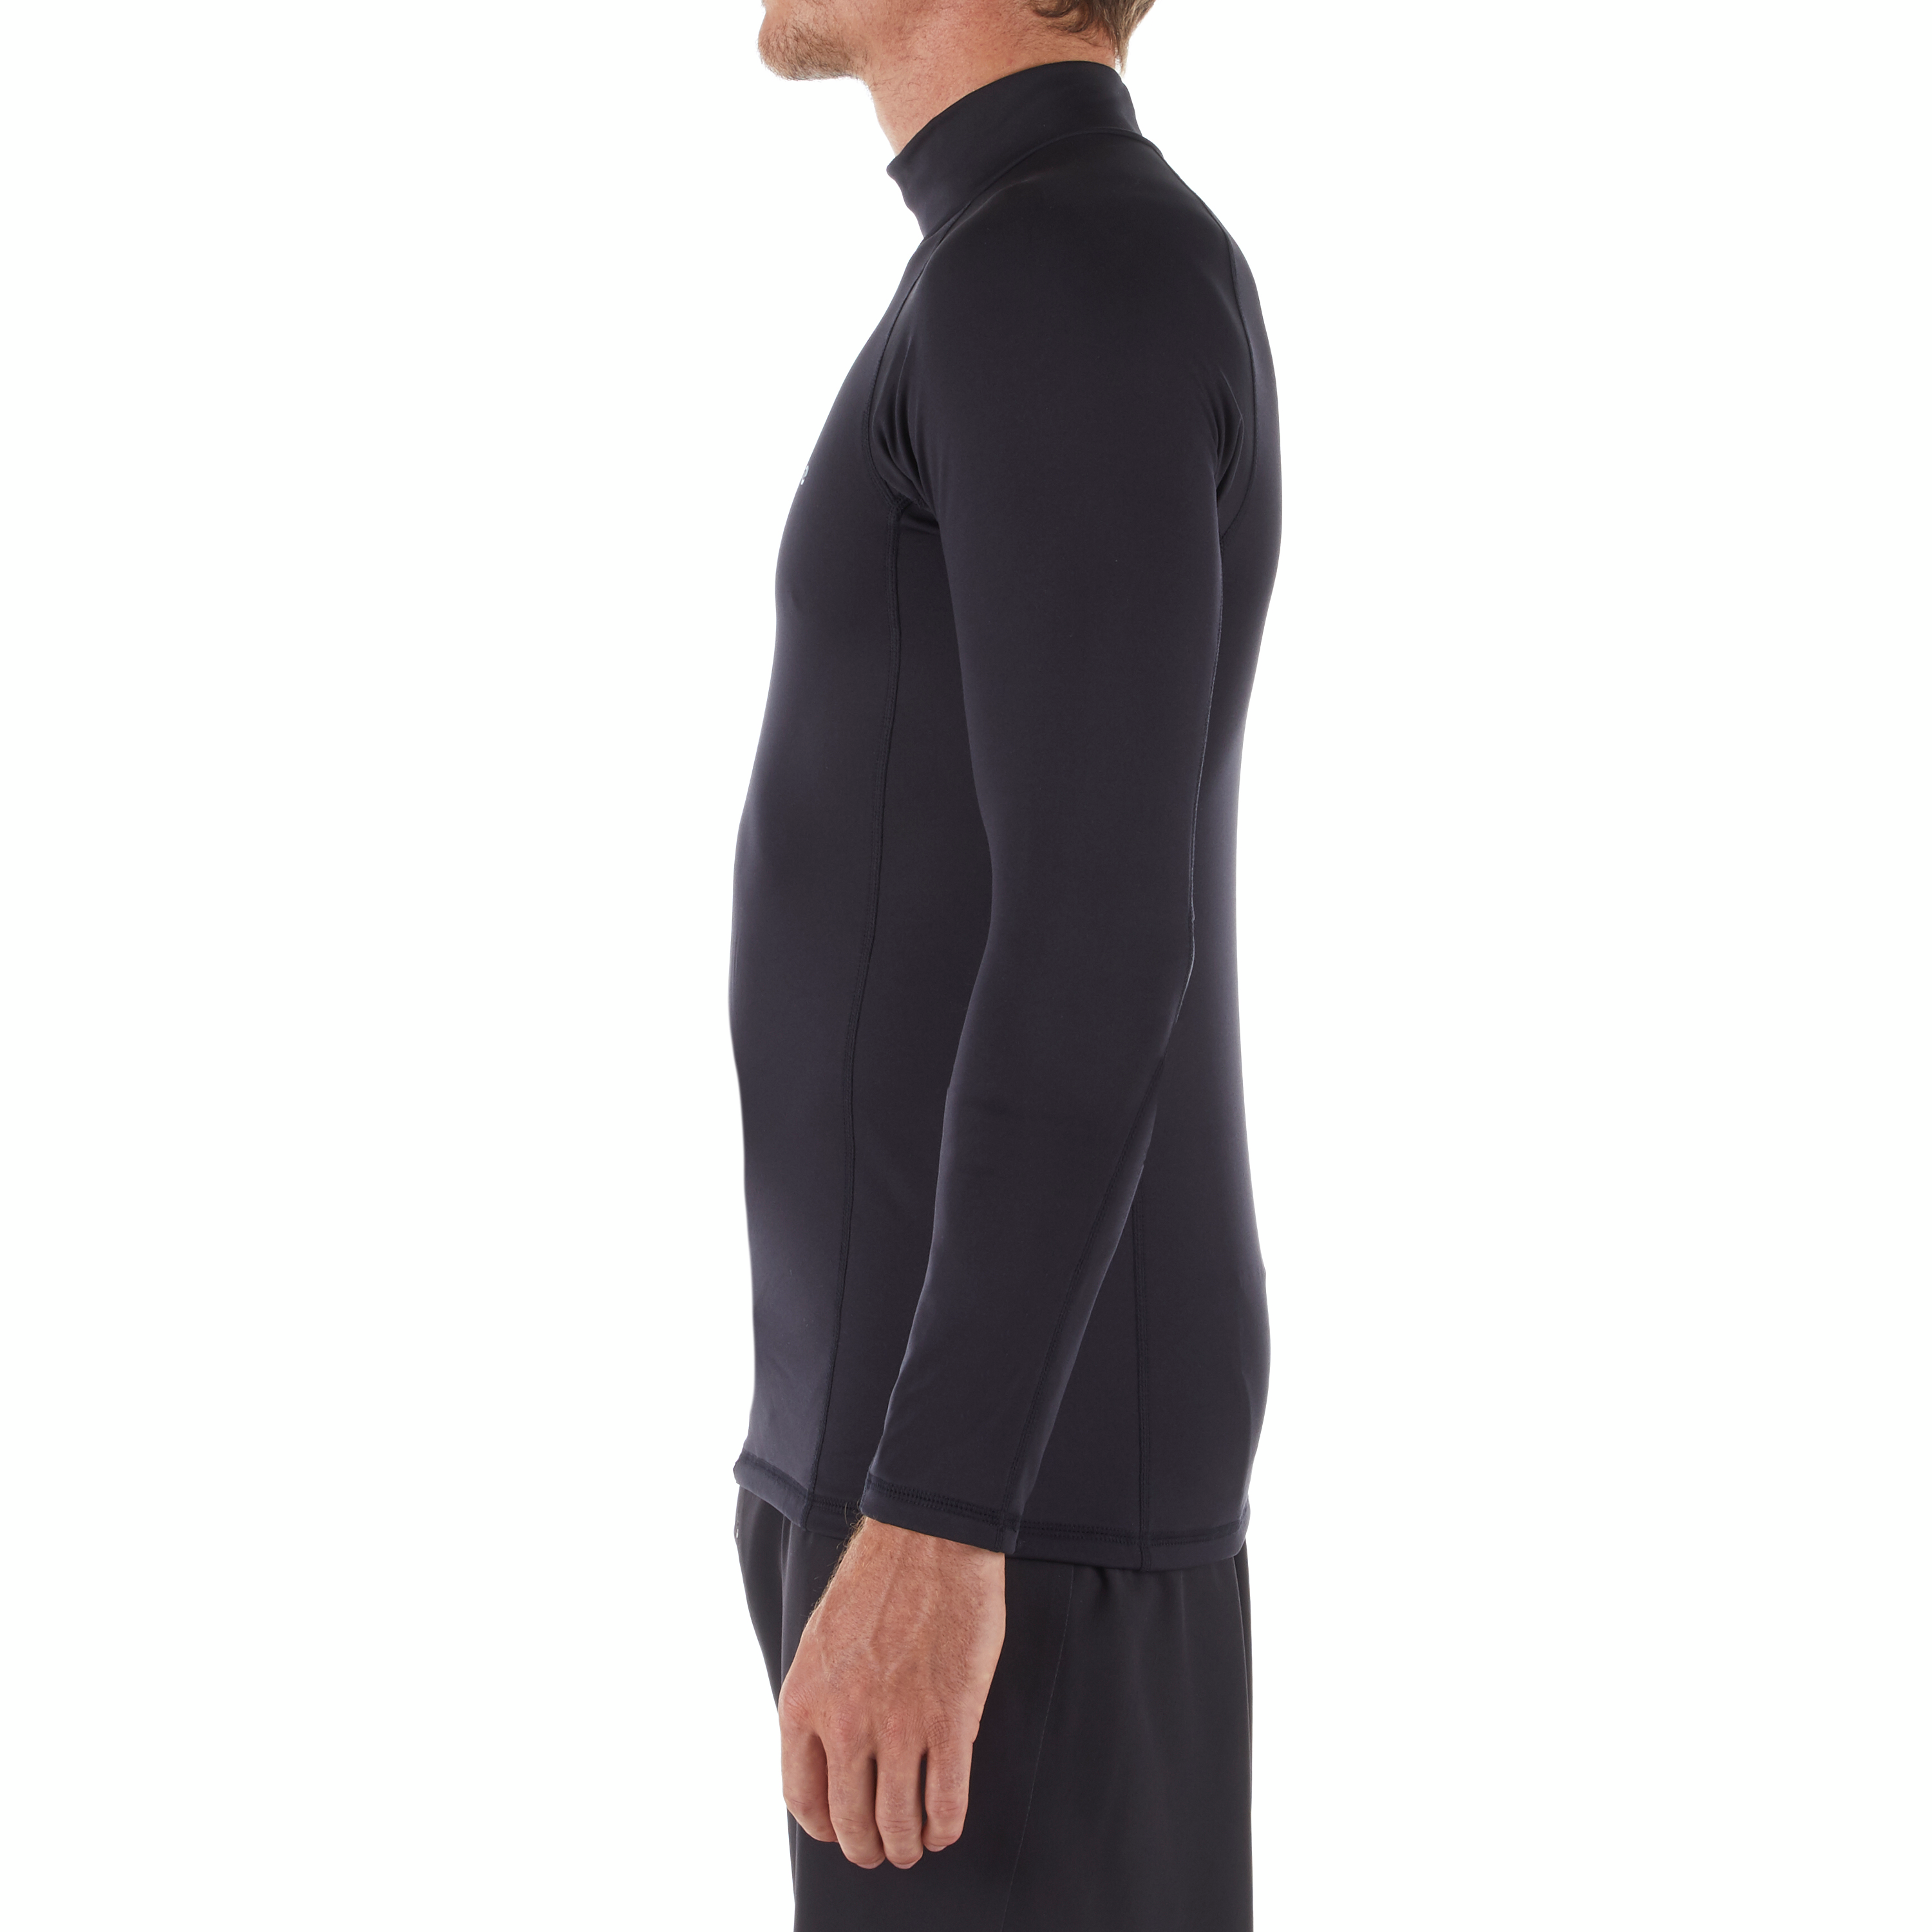 Tee shirt surf top thermique 900 polaire Manches Longues Homme Noir pour  les clubs et collectivités